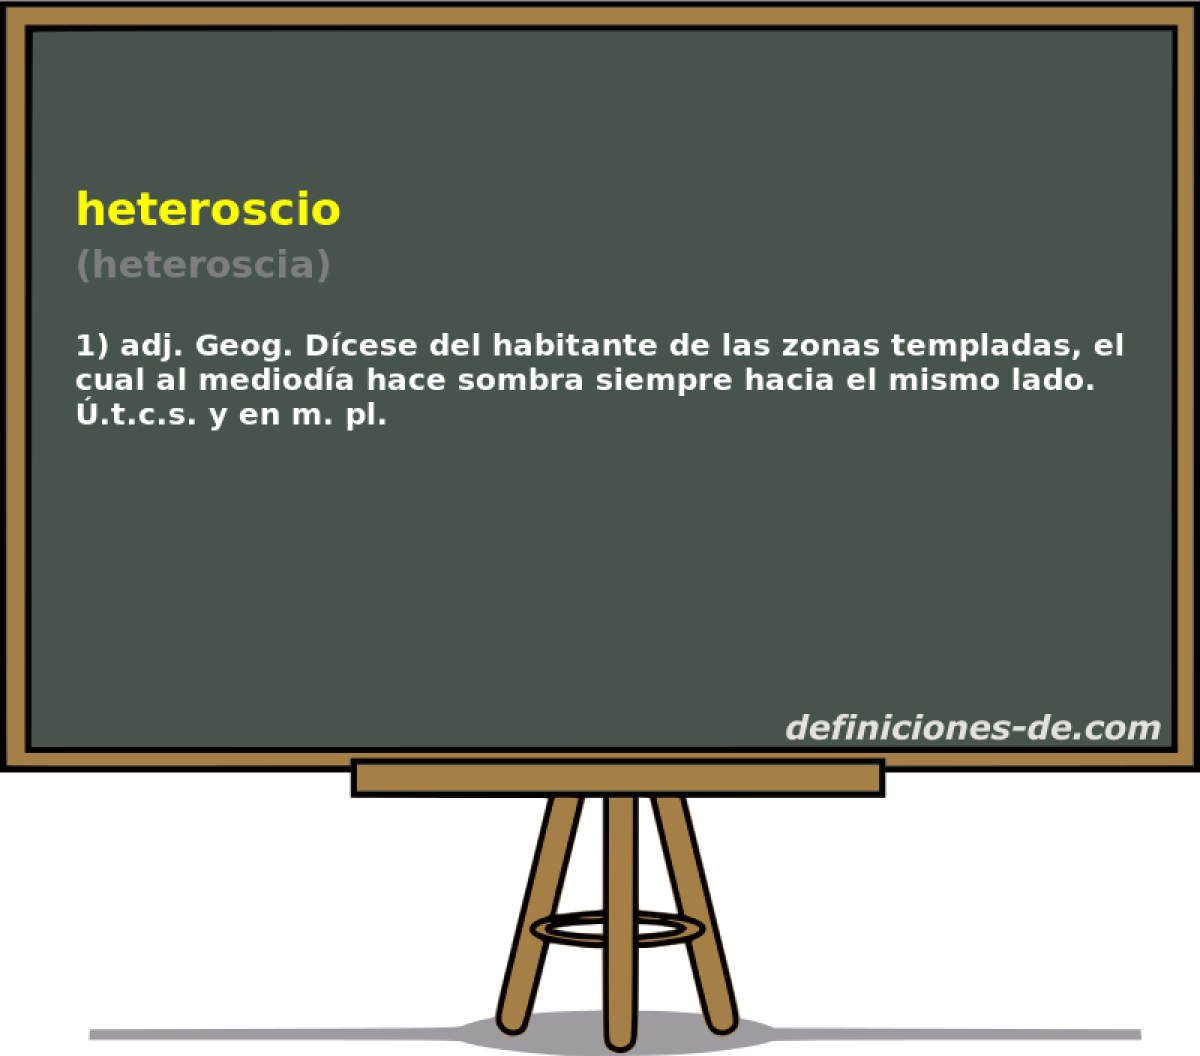 heteroscio (heteroscia)